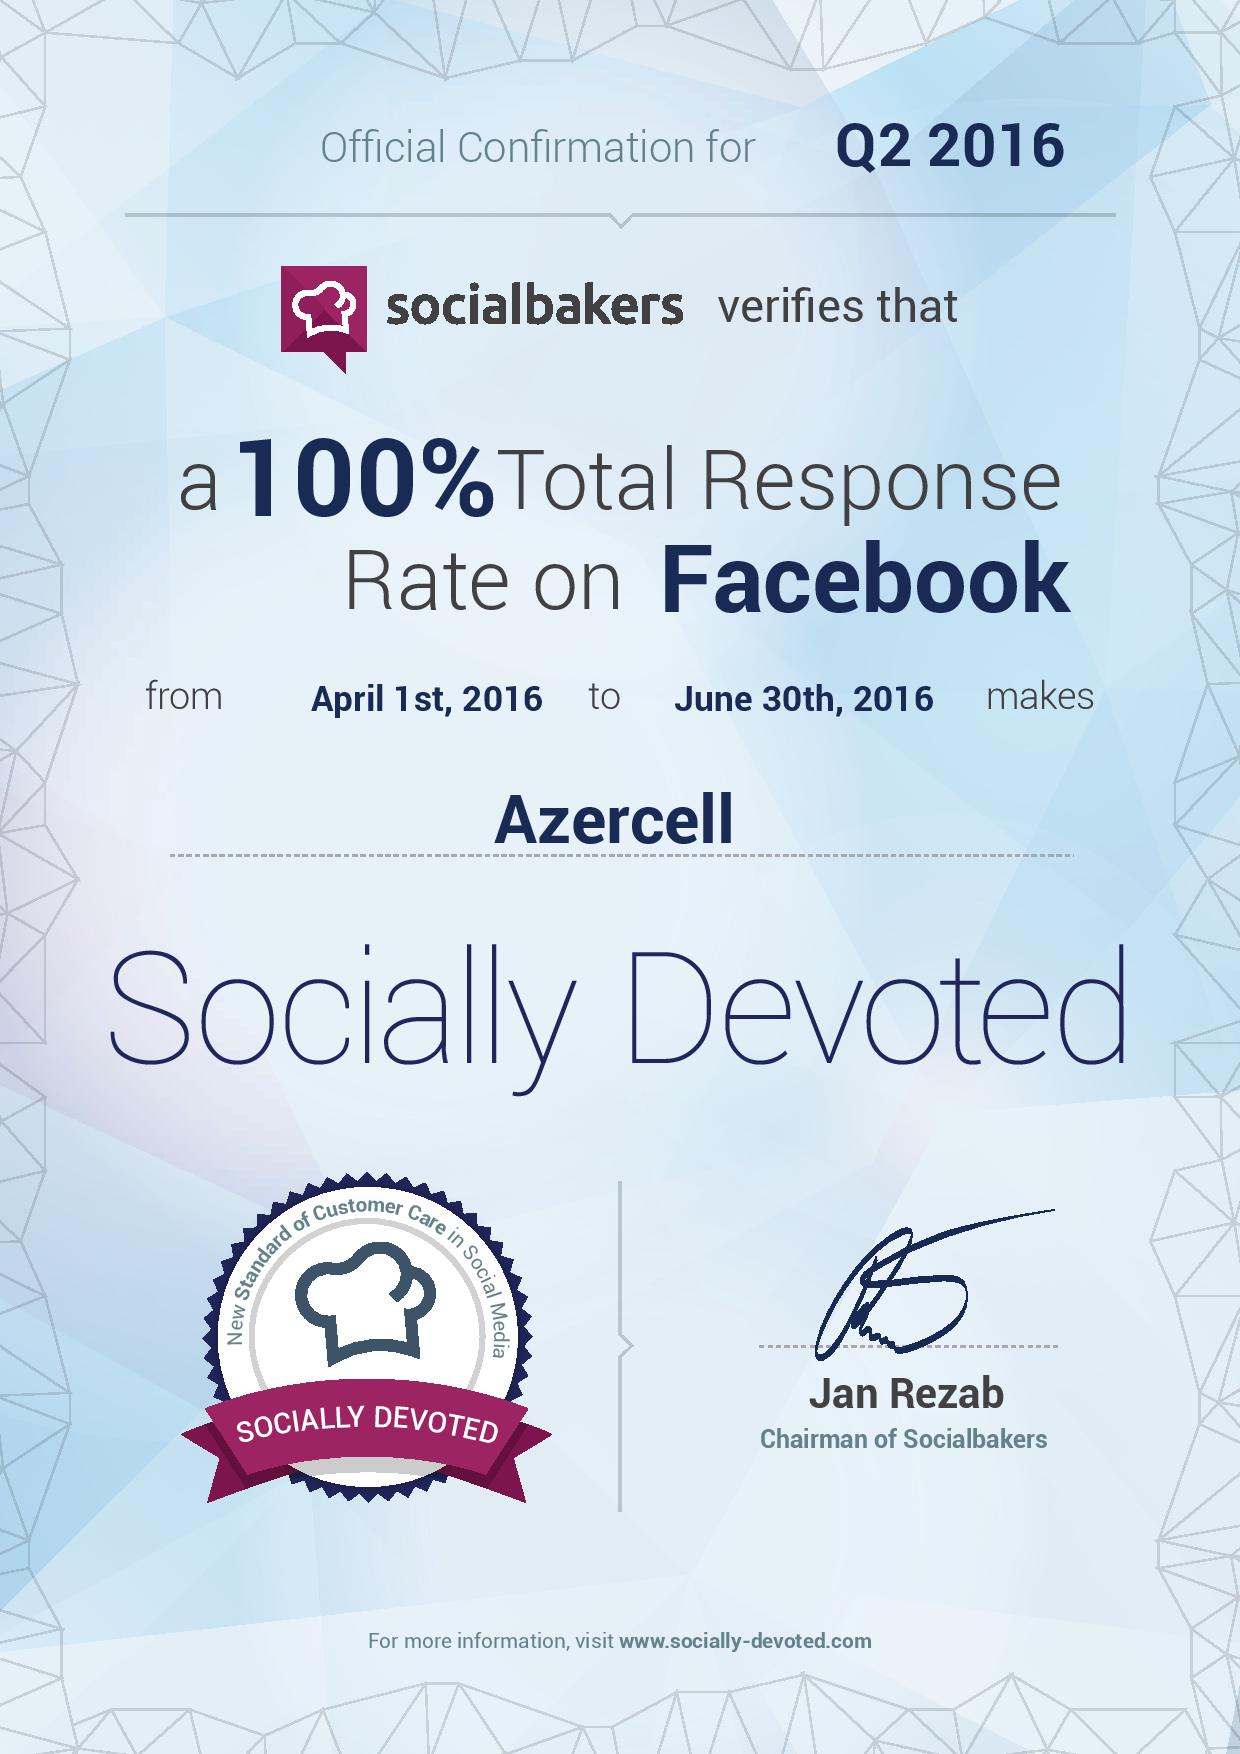 Со 100% показателем Azercell в очередной раз стал лидером в социальных сетях